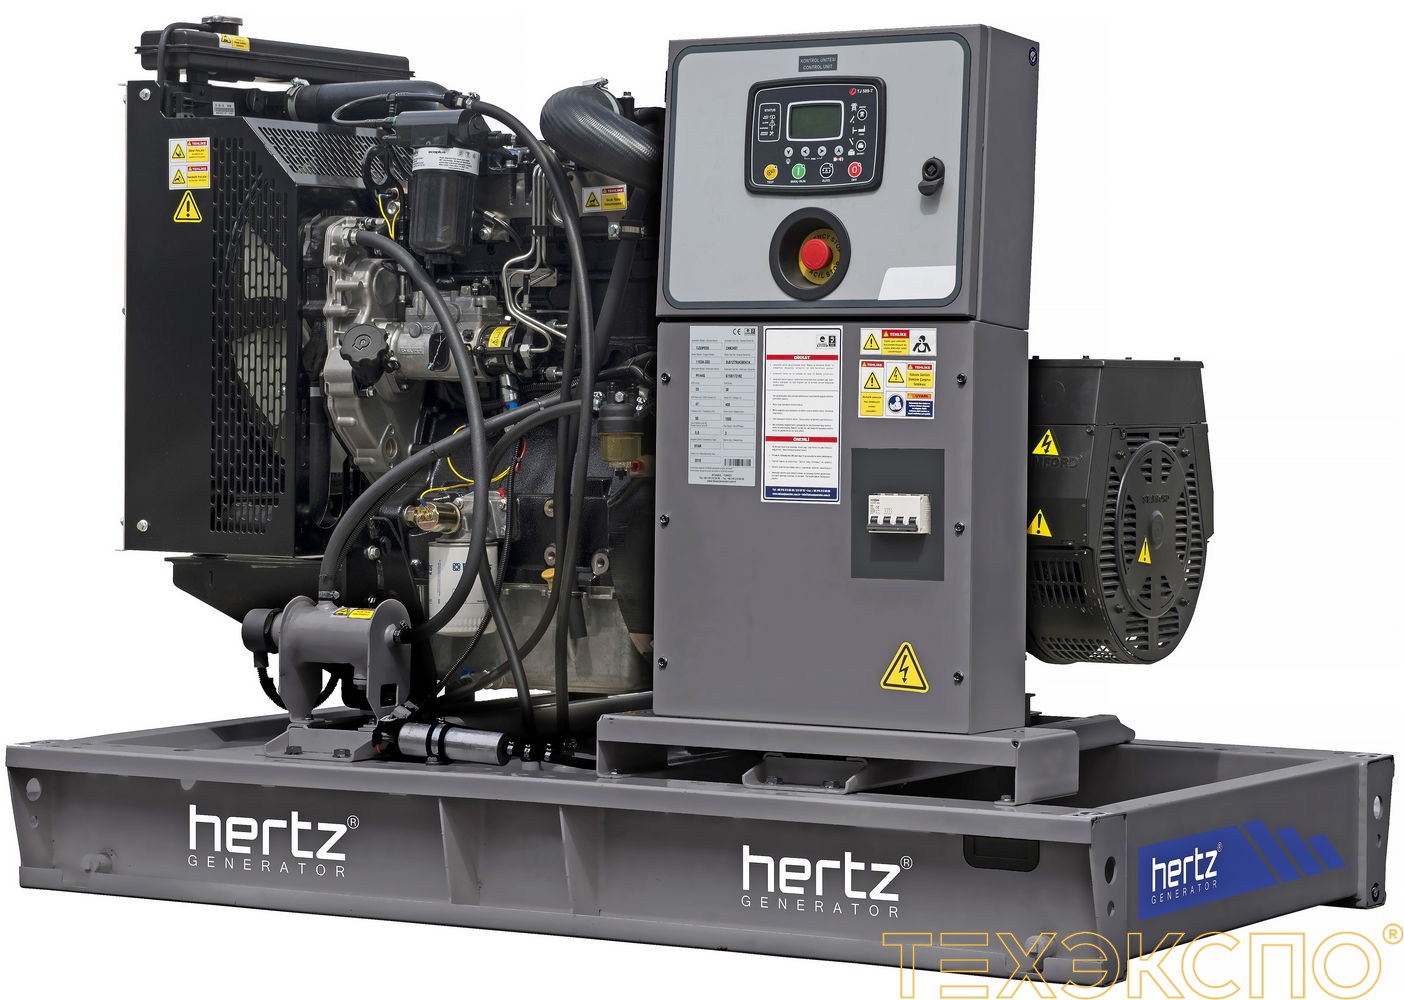 HERTZ HG152PC - ДЭС 111 кВт в Санкт-Петербурге за 2 721 018 рублей | Дизельная электростанция в Техэкспо